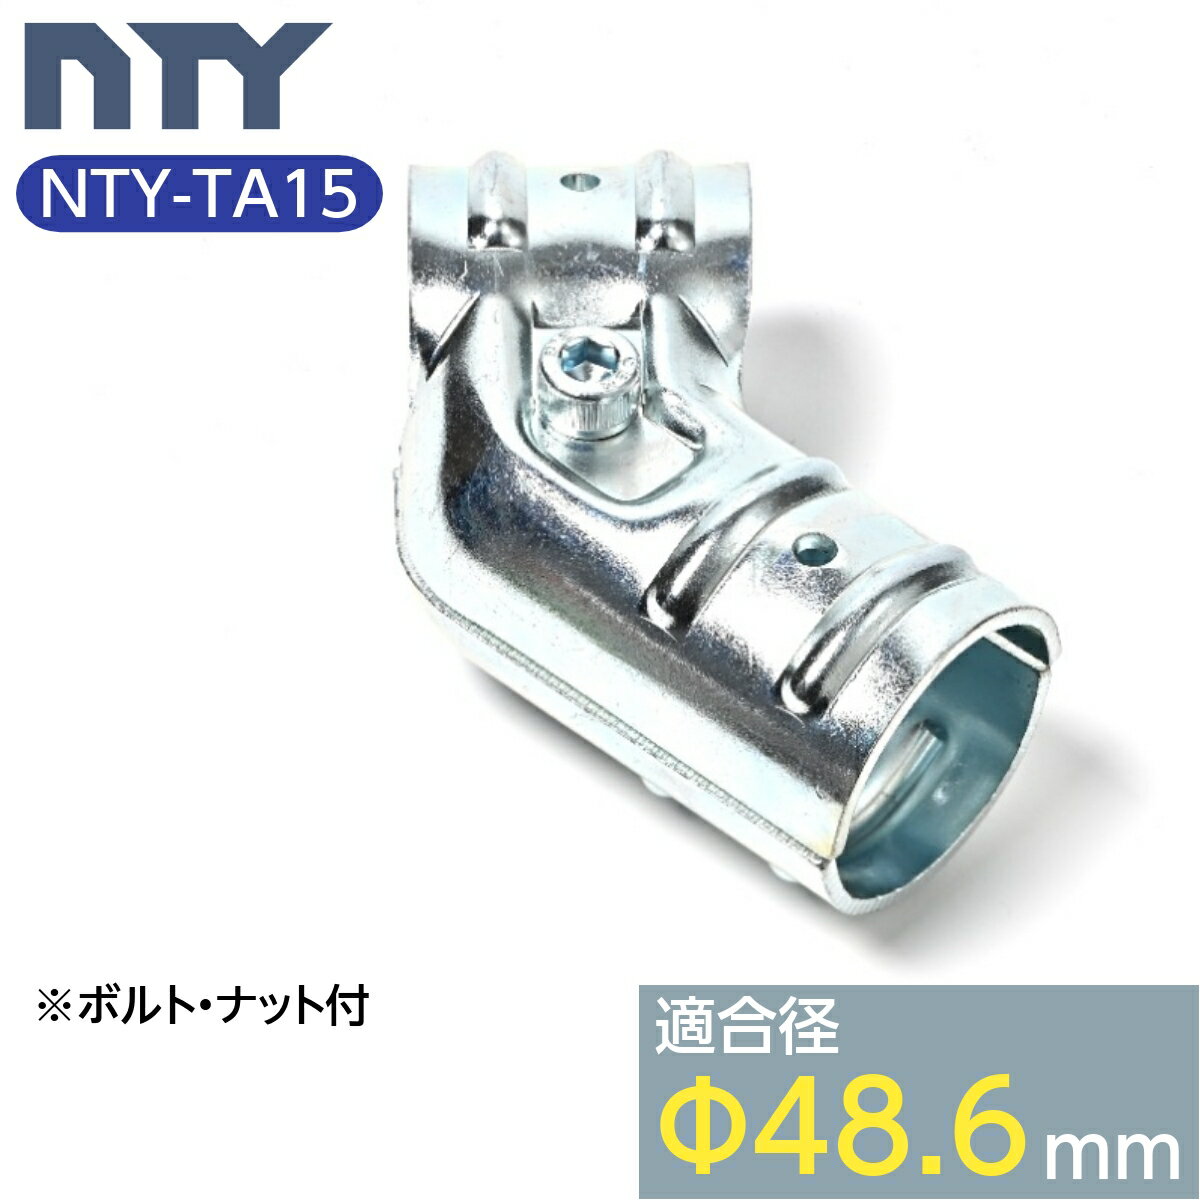 ñɥѥ 祤 NTY-TA15 48.6mm ñ ѥ  ñ³ ڸ 祤  Ҹ DIY